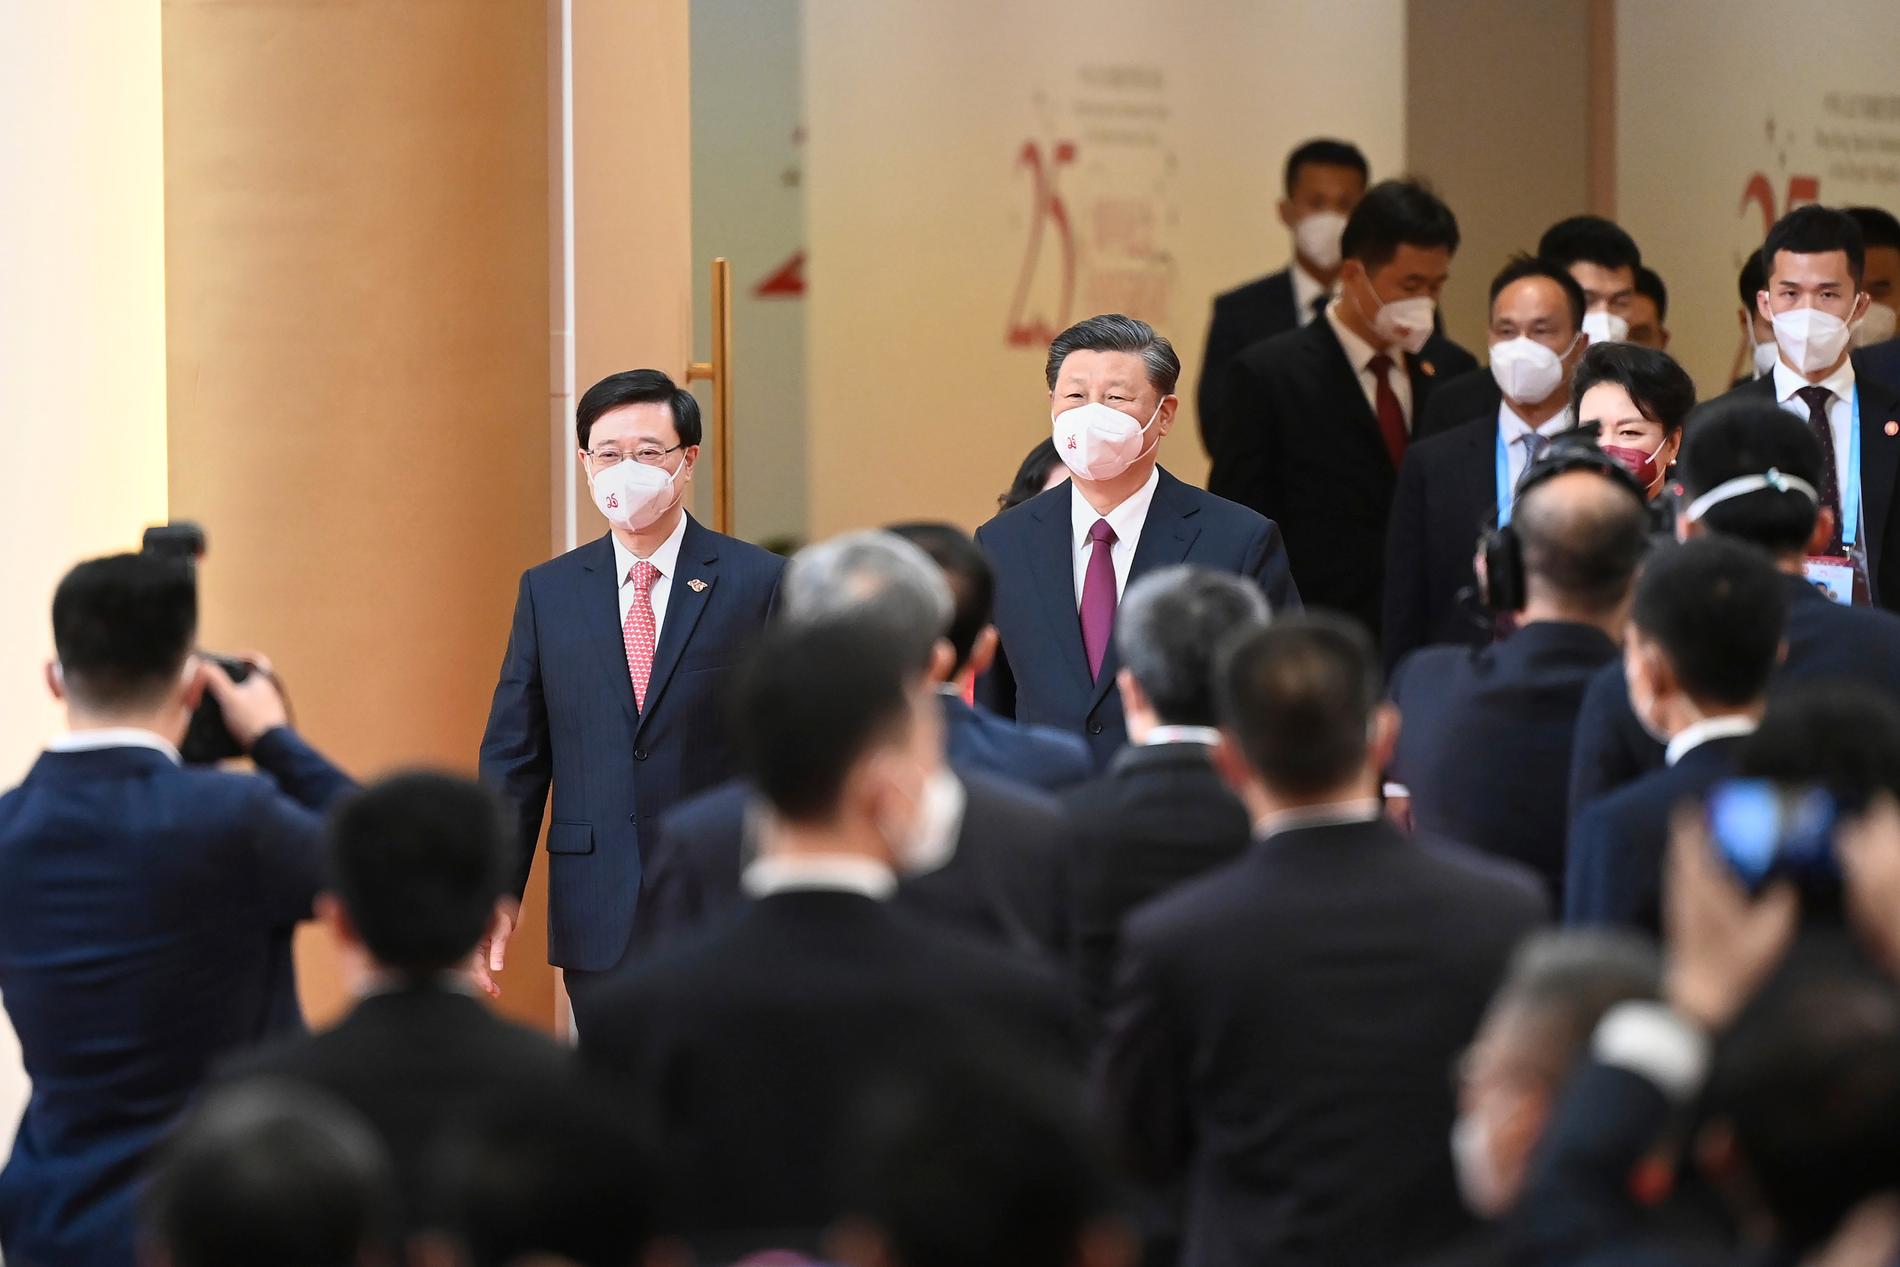 Kinas president Xi Jinping anländer till ceremonin tillsammans med Hongkongs nye ledare John Lee (till vänster).